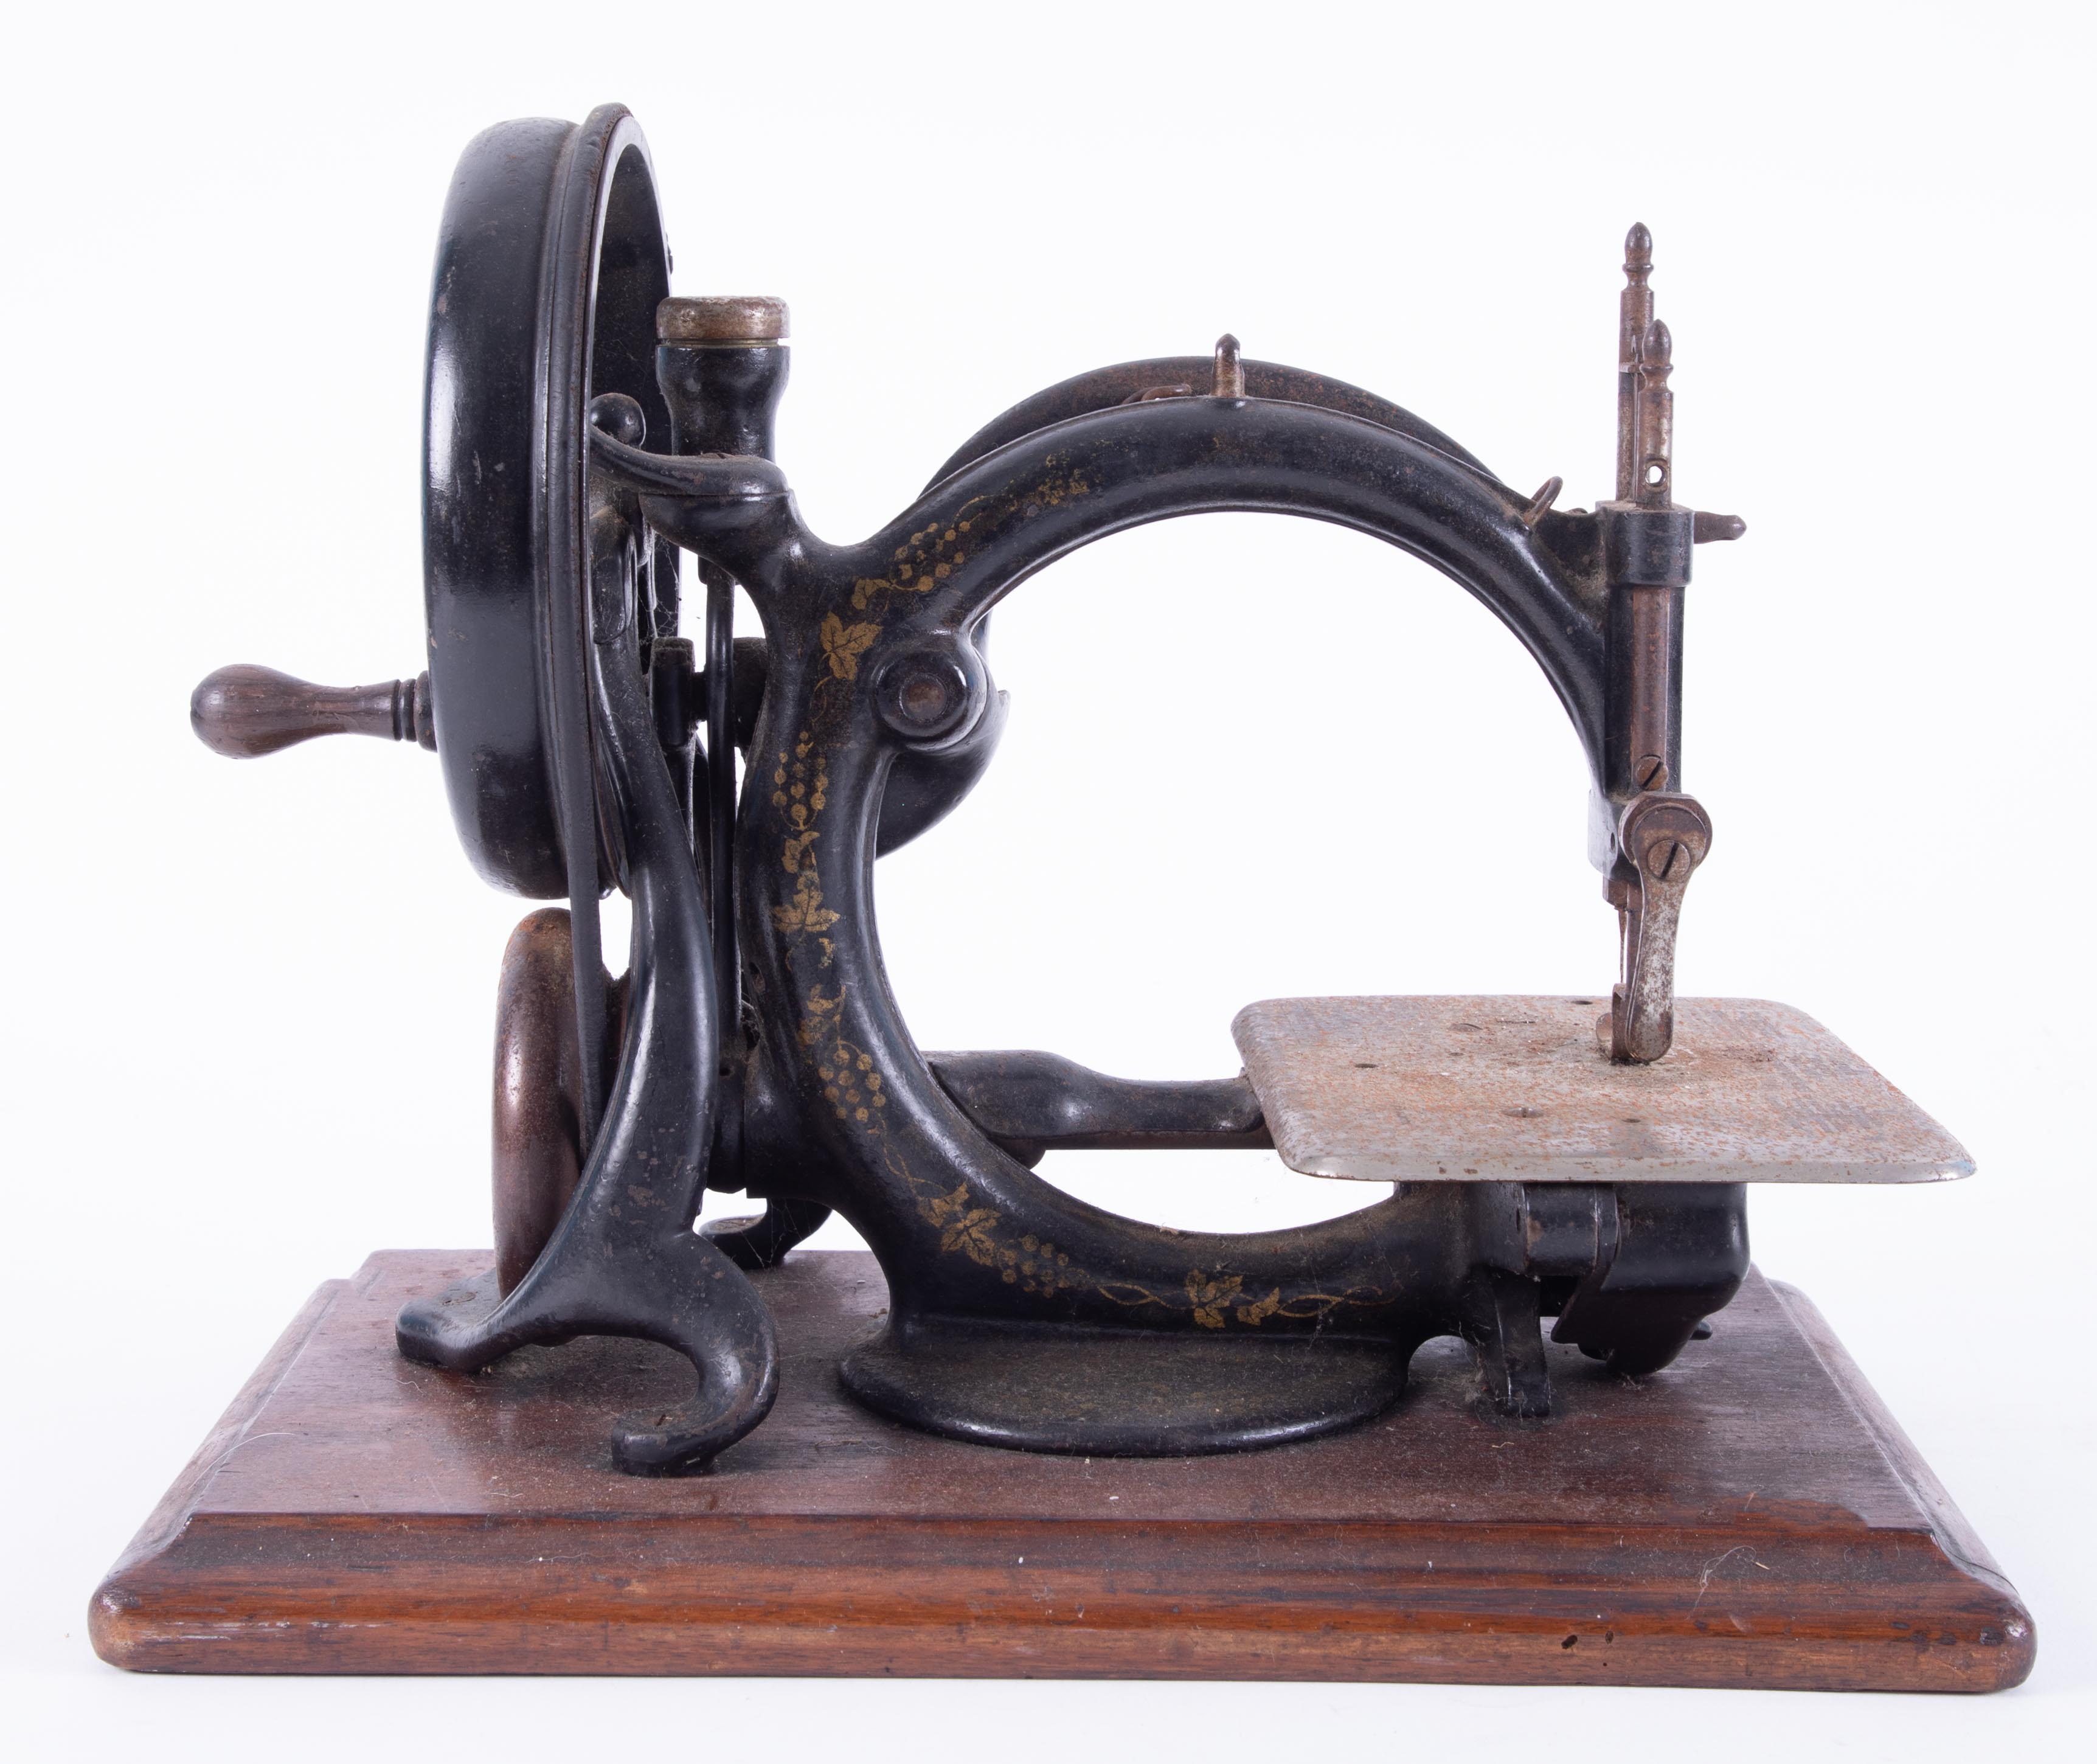 Willcox & Gibbs sewing machine circa 1890.